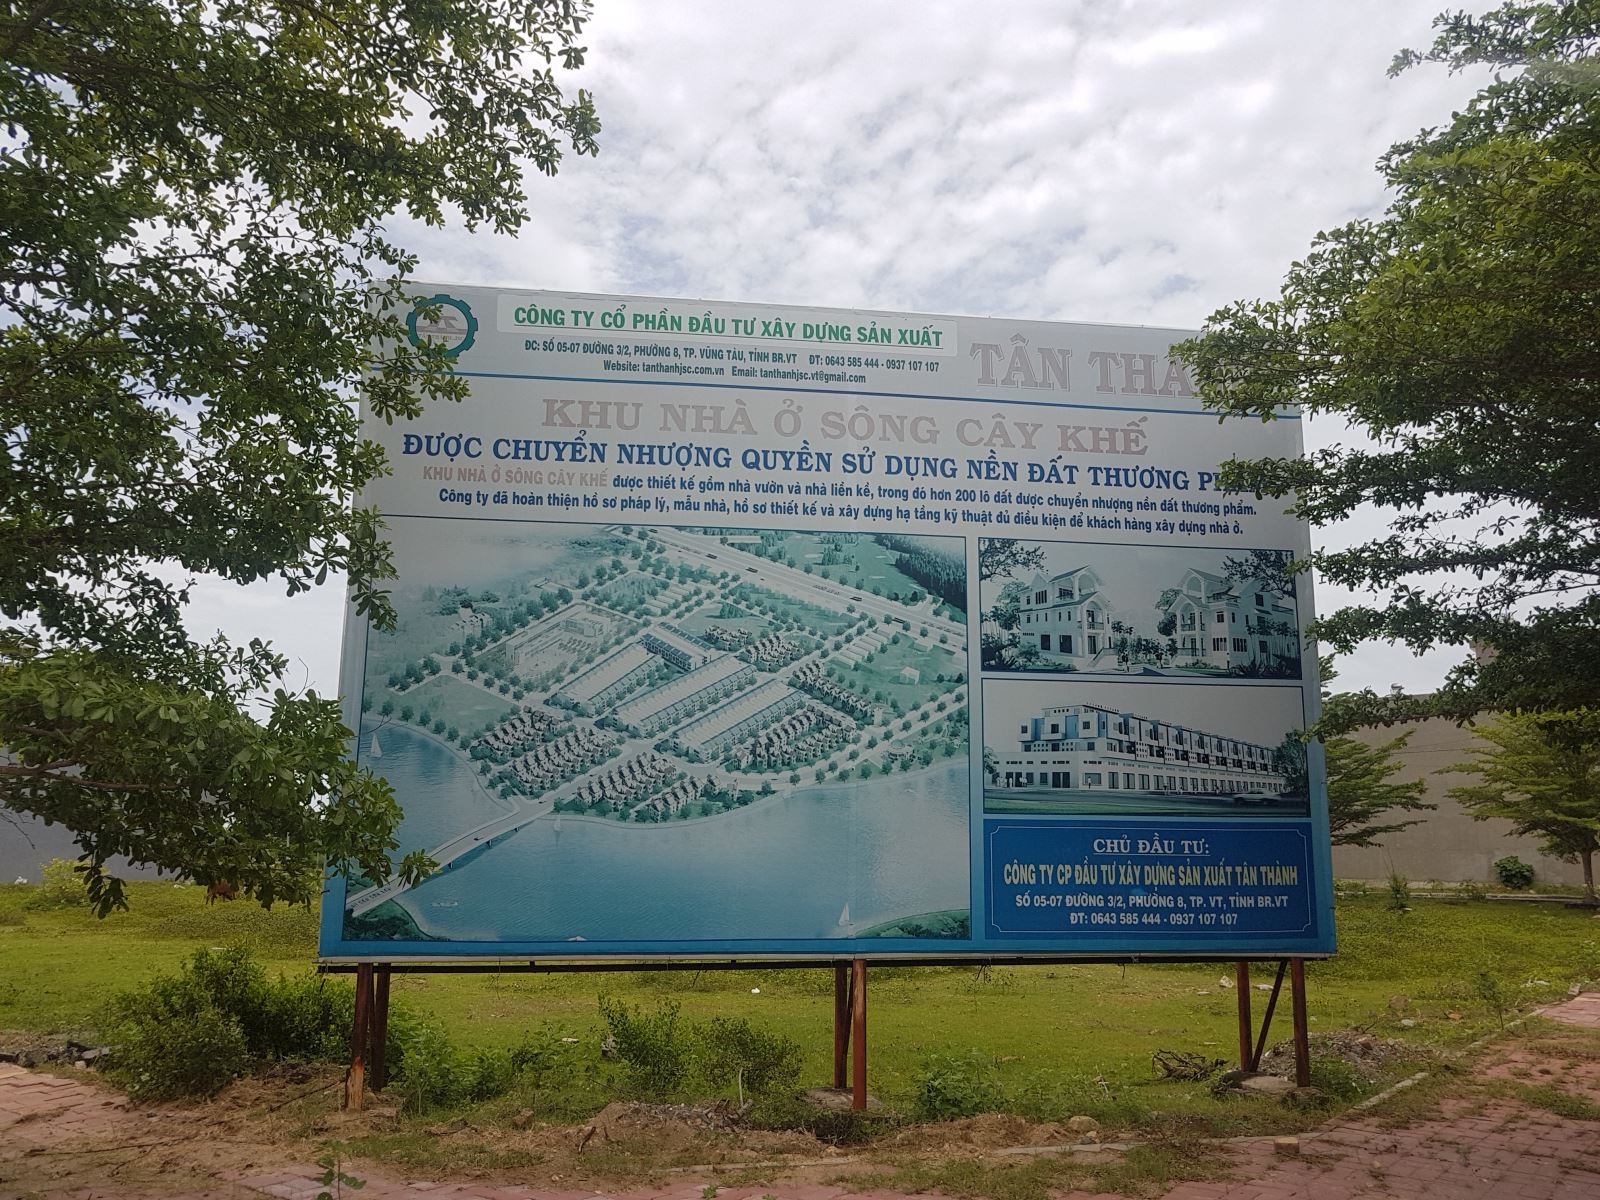 DA Nhà ở Sông Cây Khế: CĐT xây dựng công trình 'khủng' không phép?